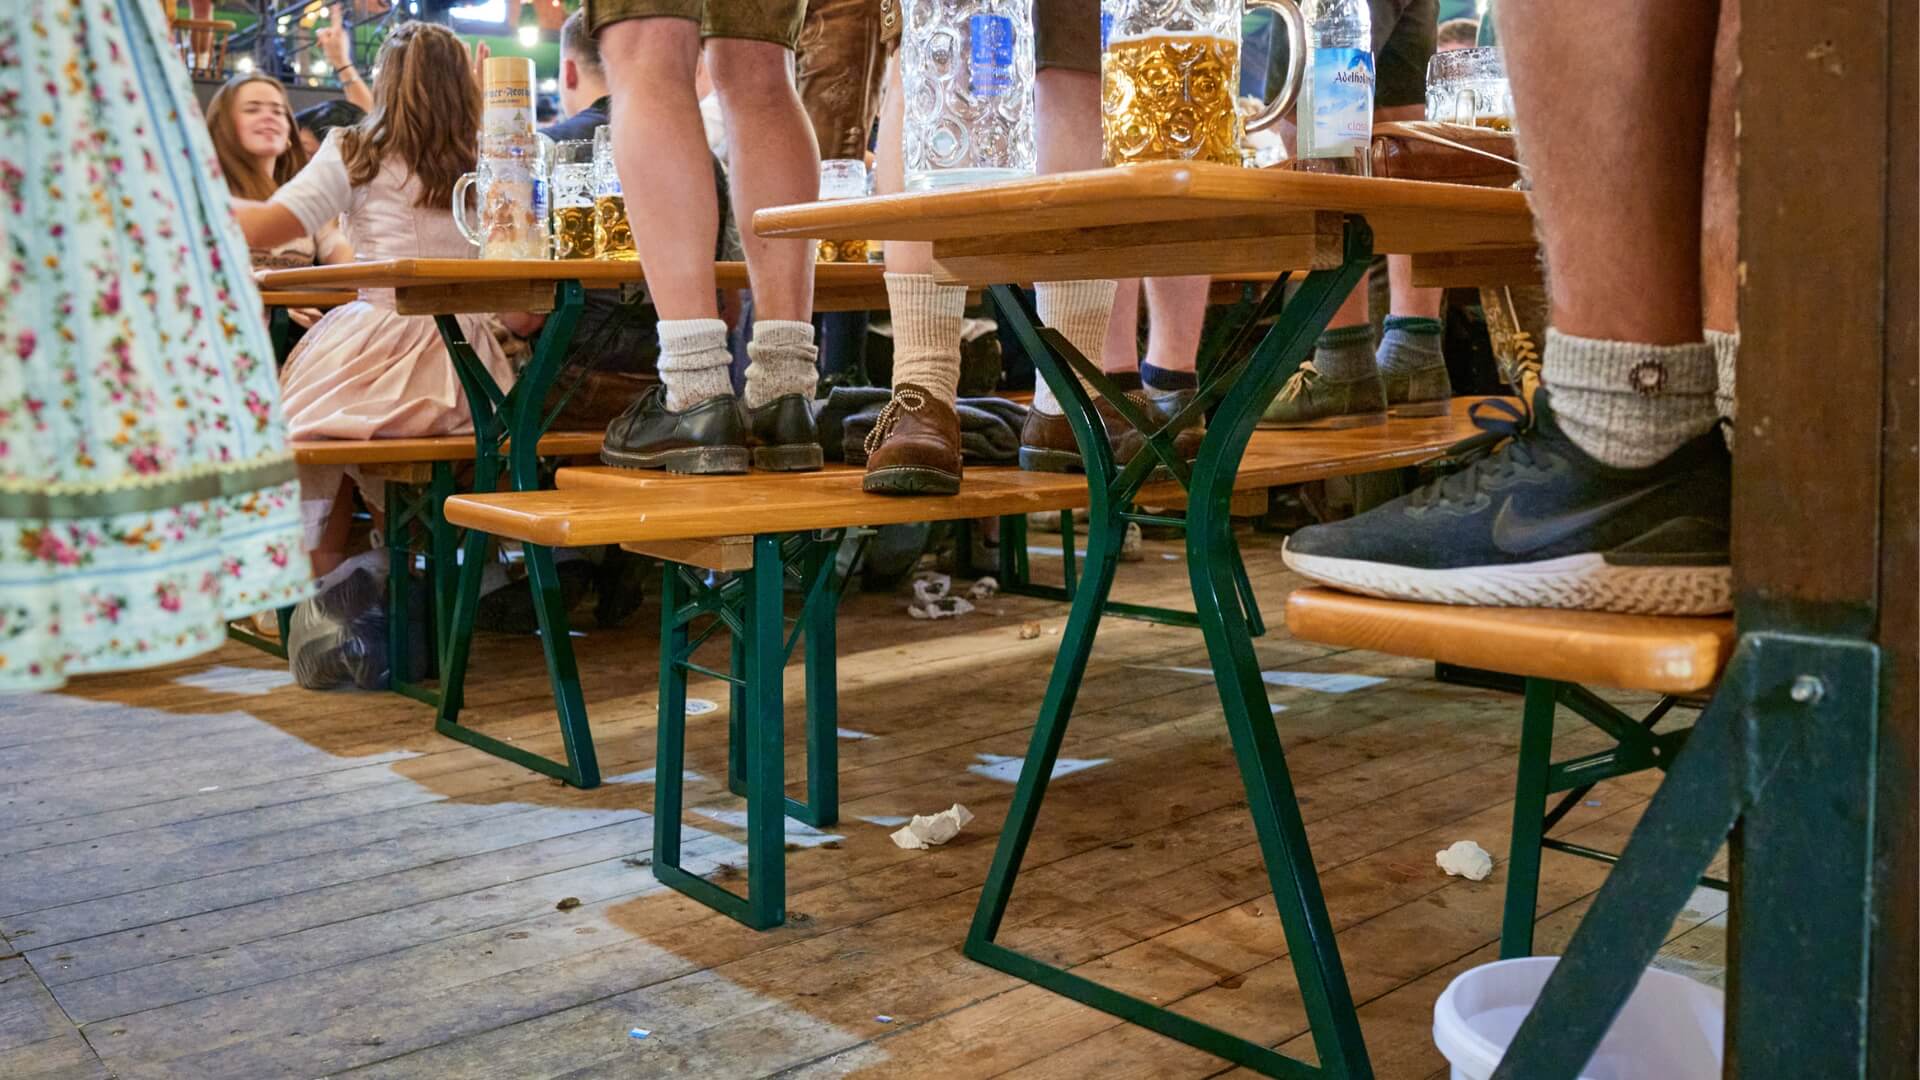 Mehrere Personen stehen beim Oktoberfest auf den Bierbänken der Bierzeltgarnitur mit Beinfreiheit.